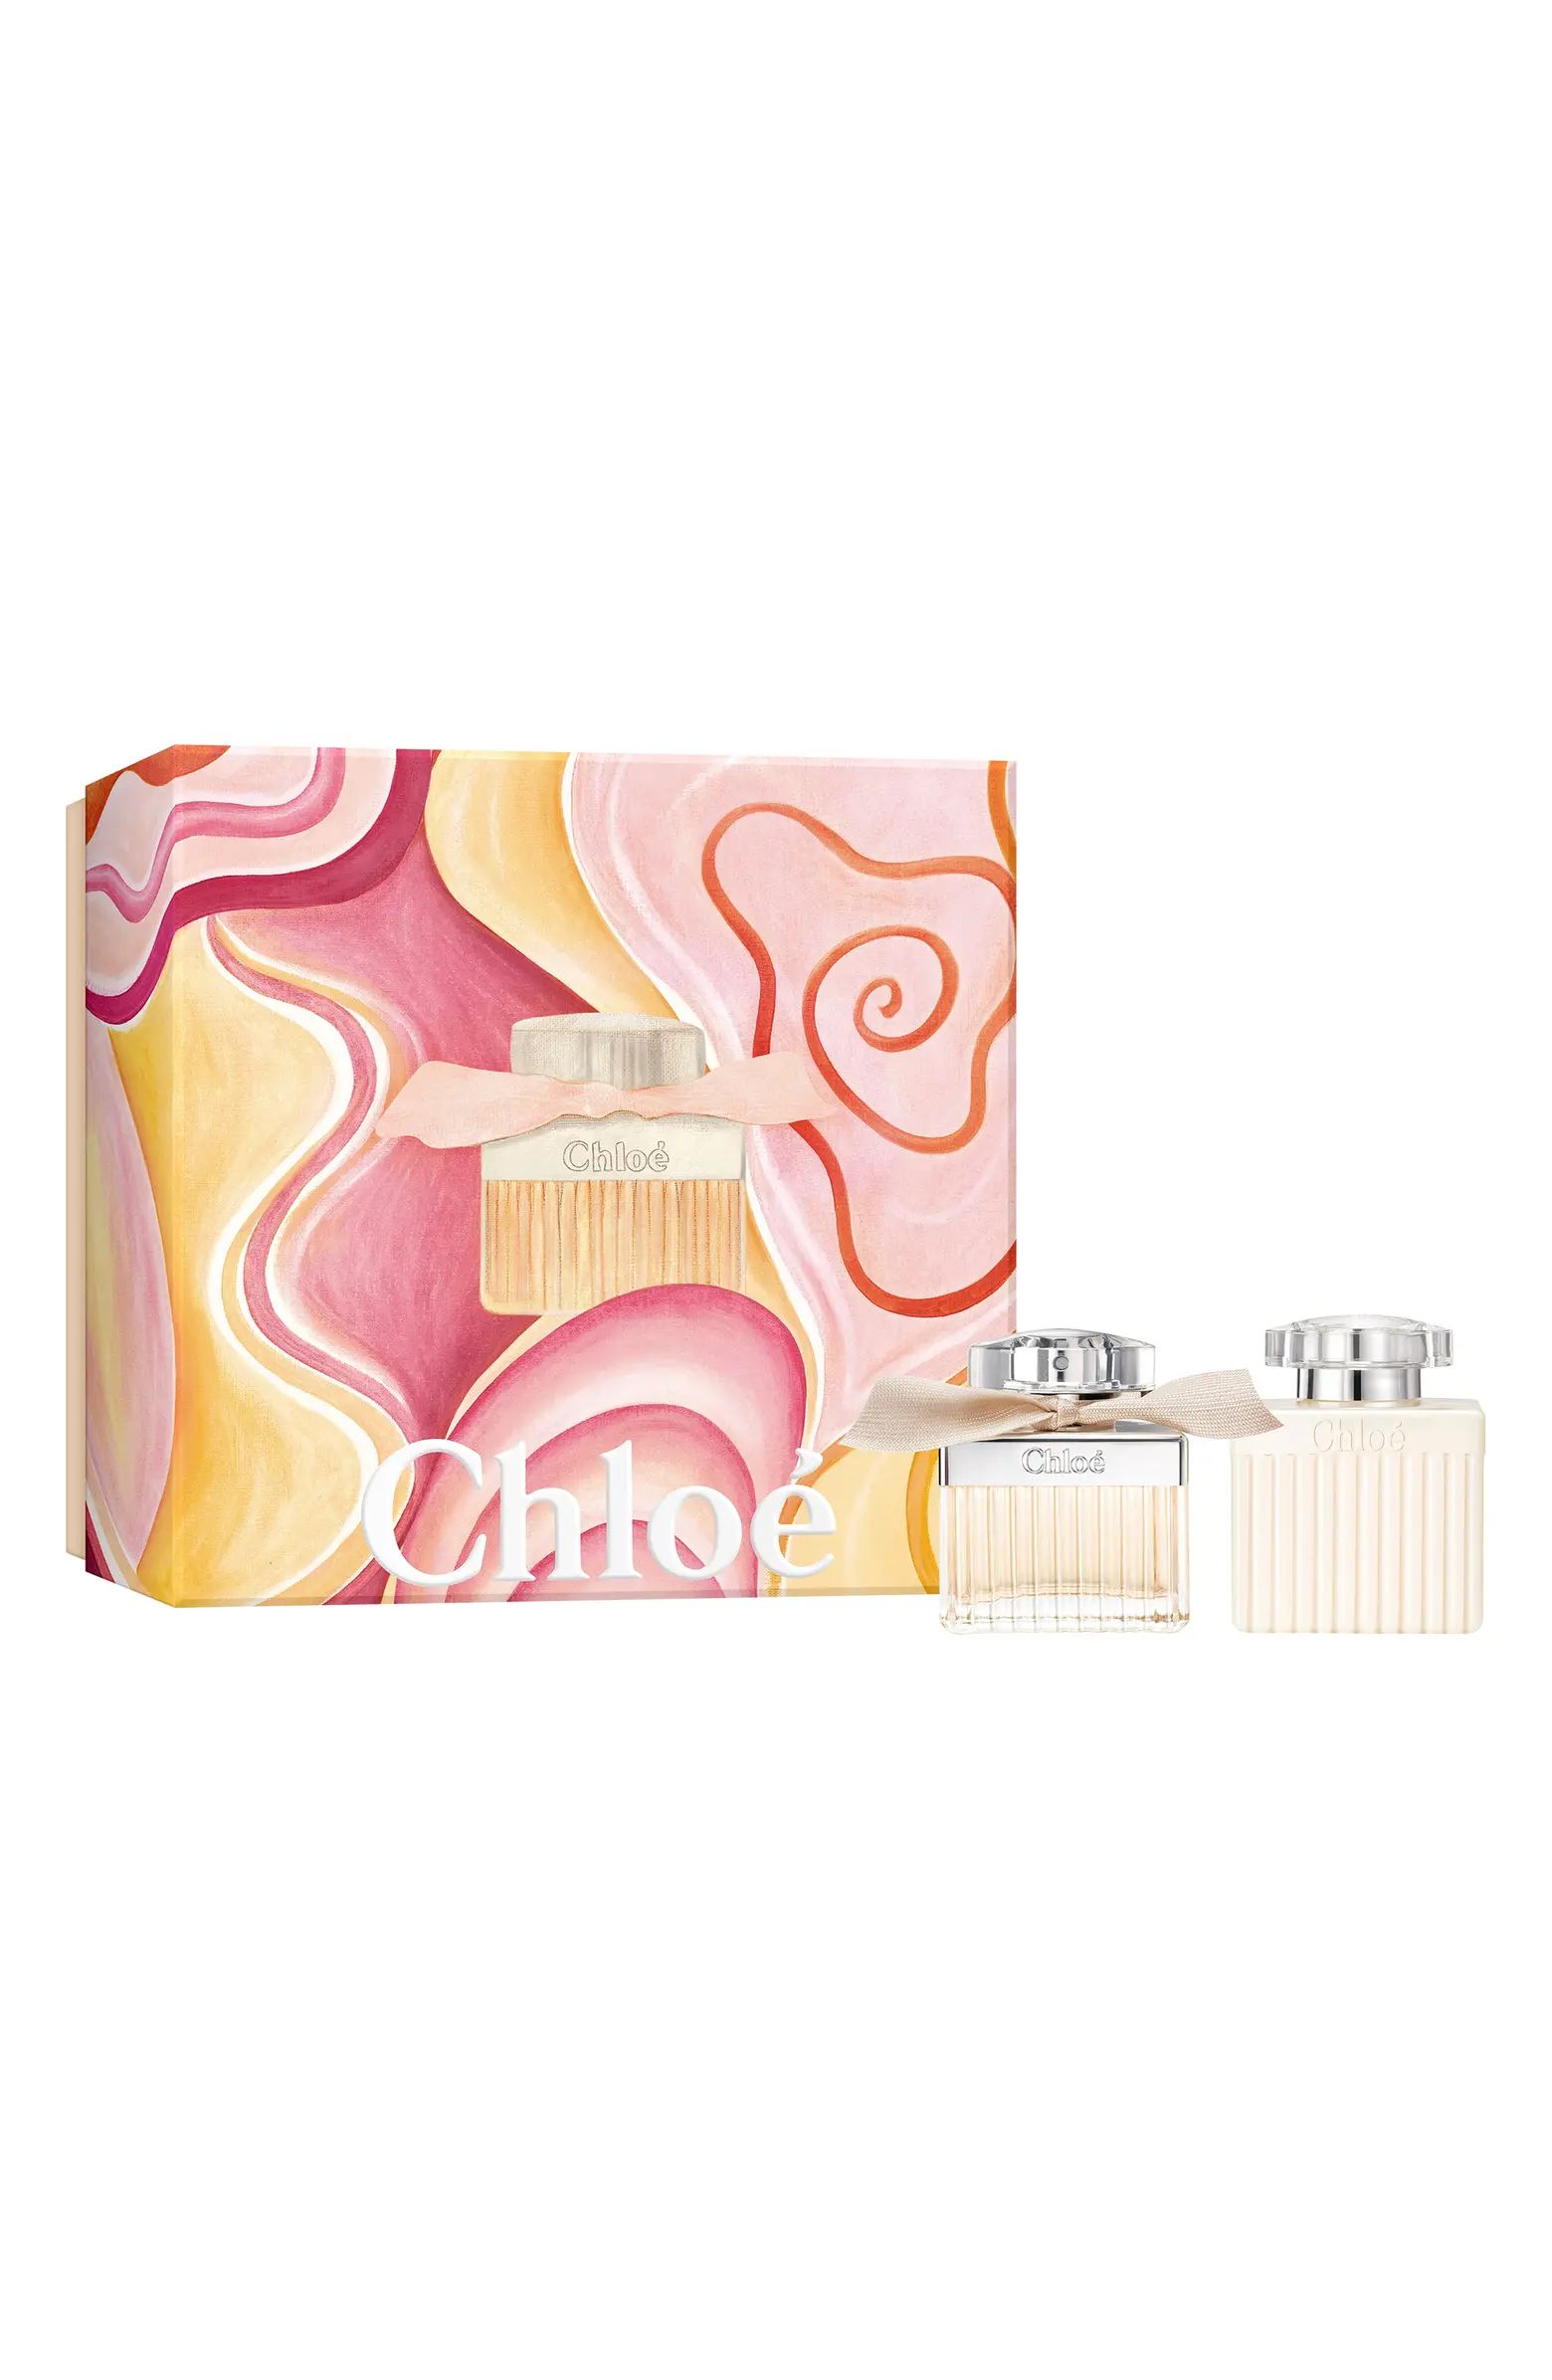 Chloé Signature Eau de Parfum Gift Set $165 Value | Nordstrom | Nordstrom